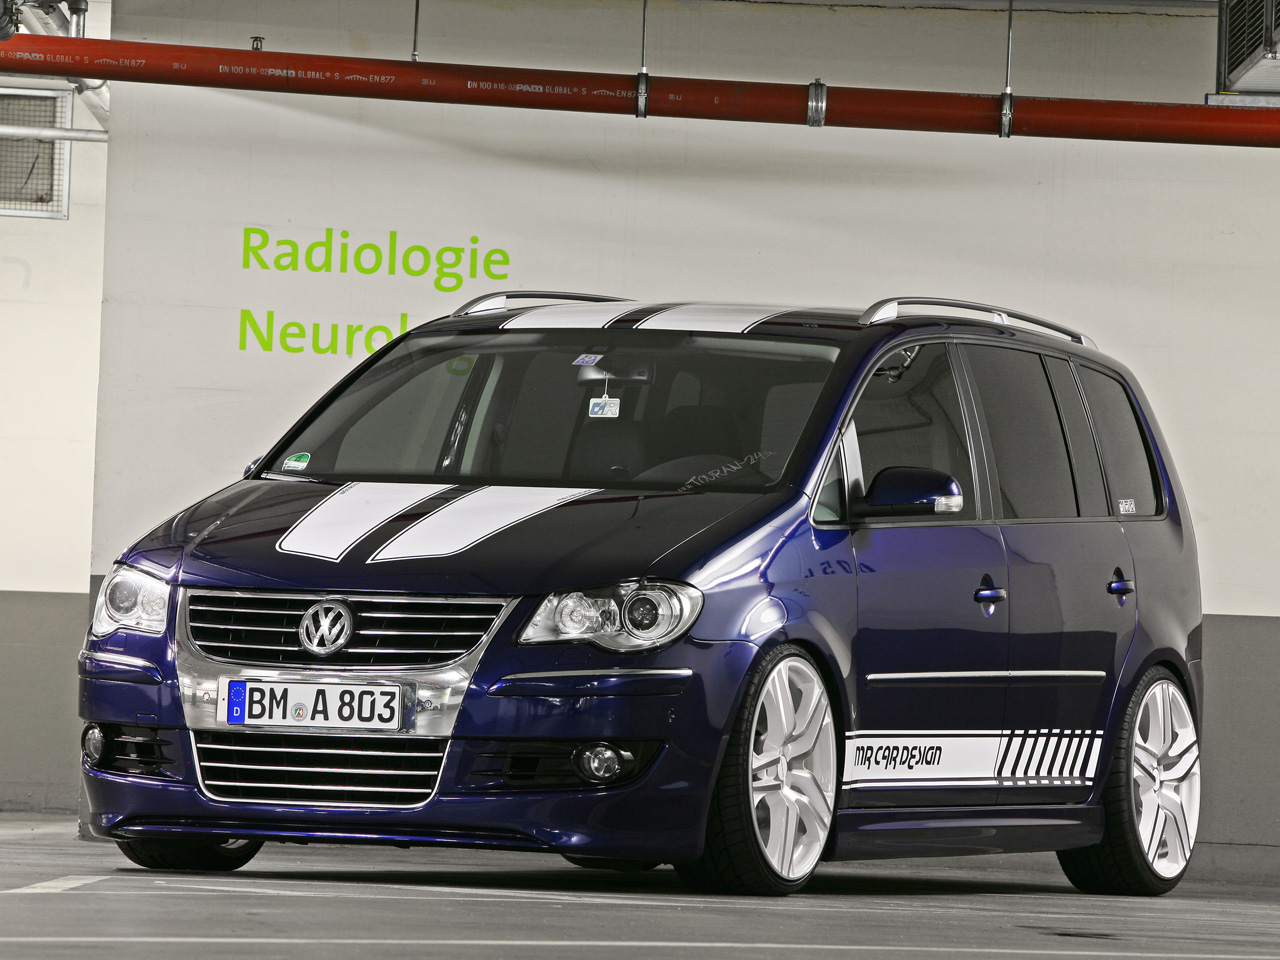 https://www.autozeitung.de/assets/gallery_images/2010/09/MR-Car-Design-Racing-VW-Touran-01.jpg